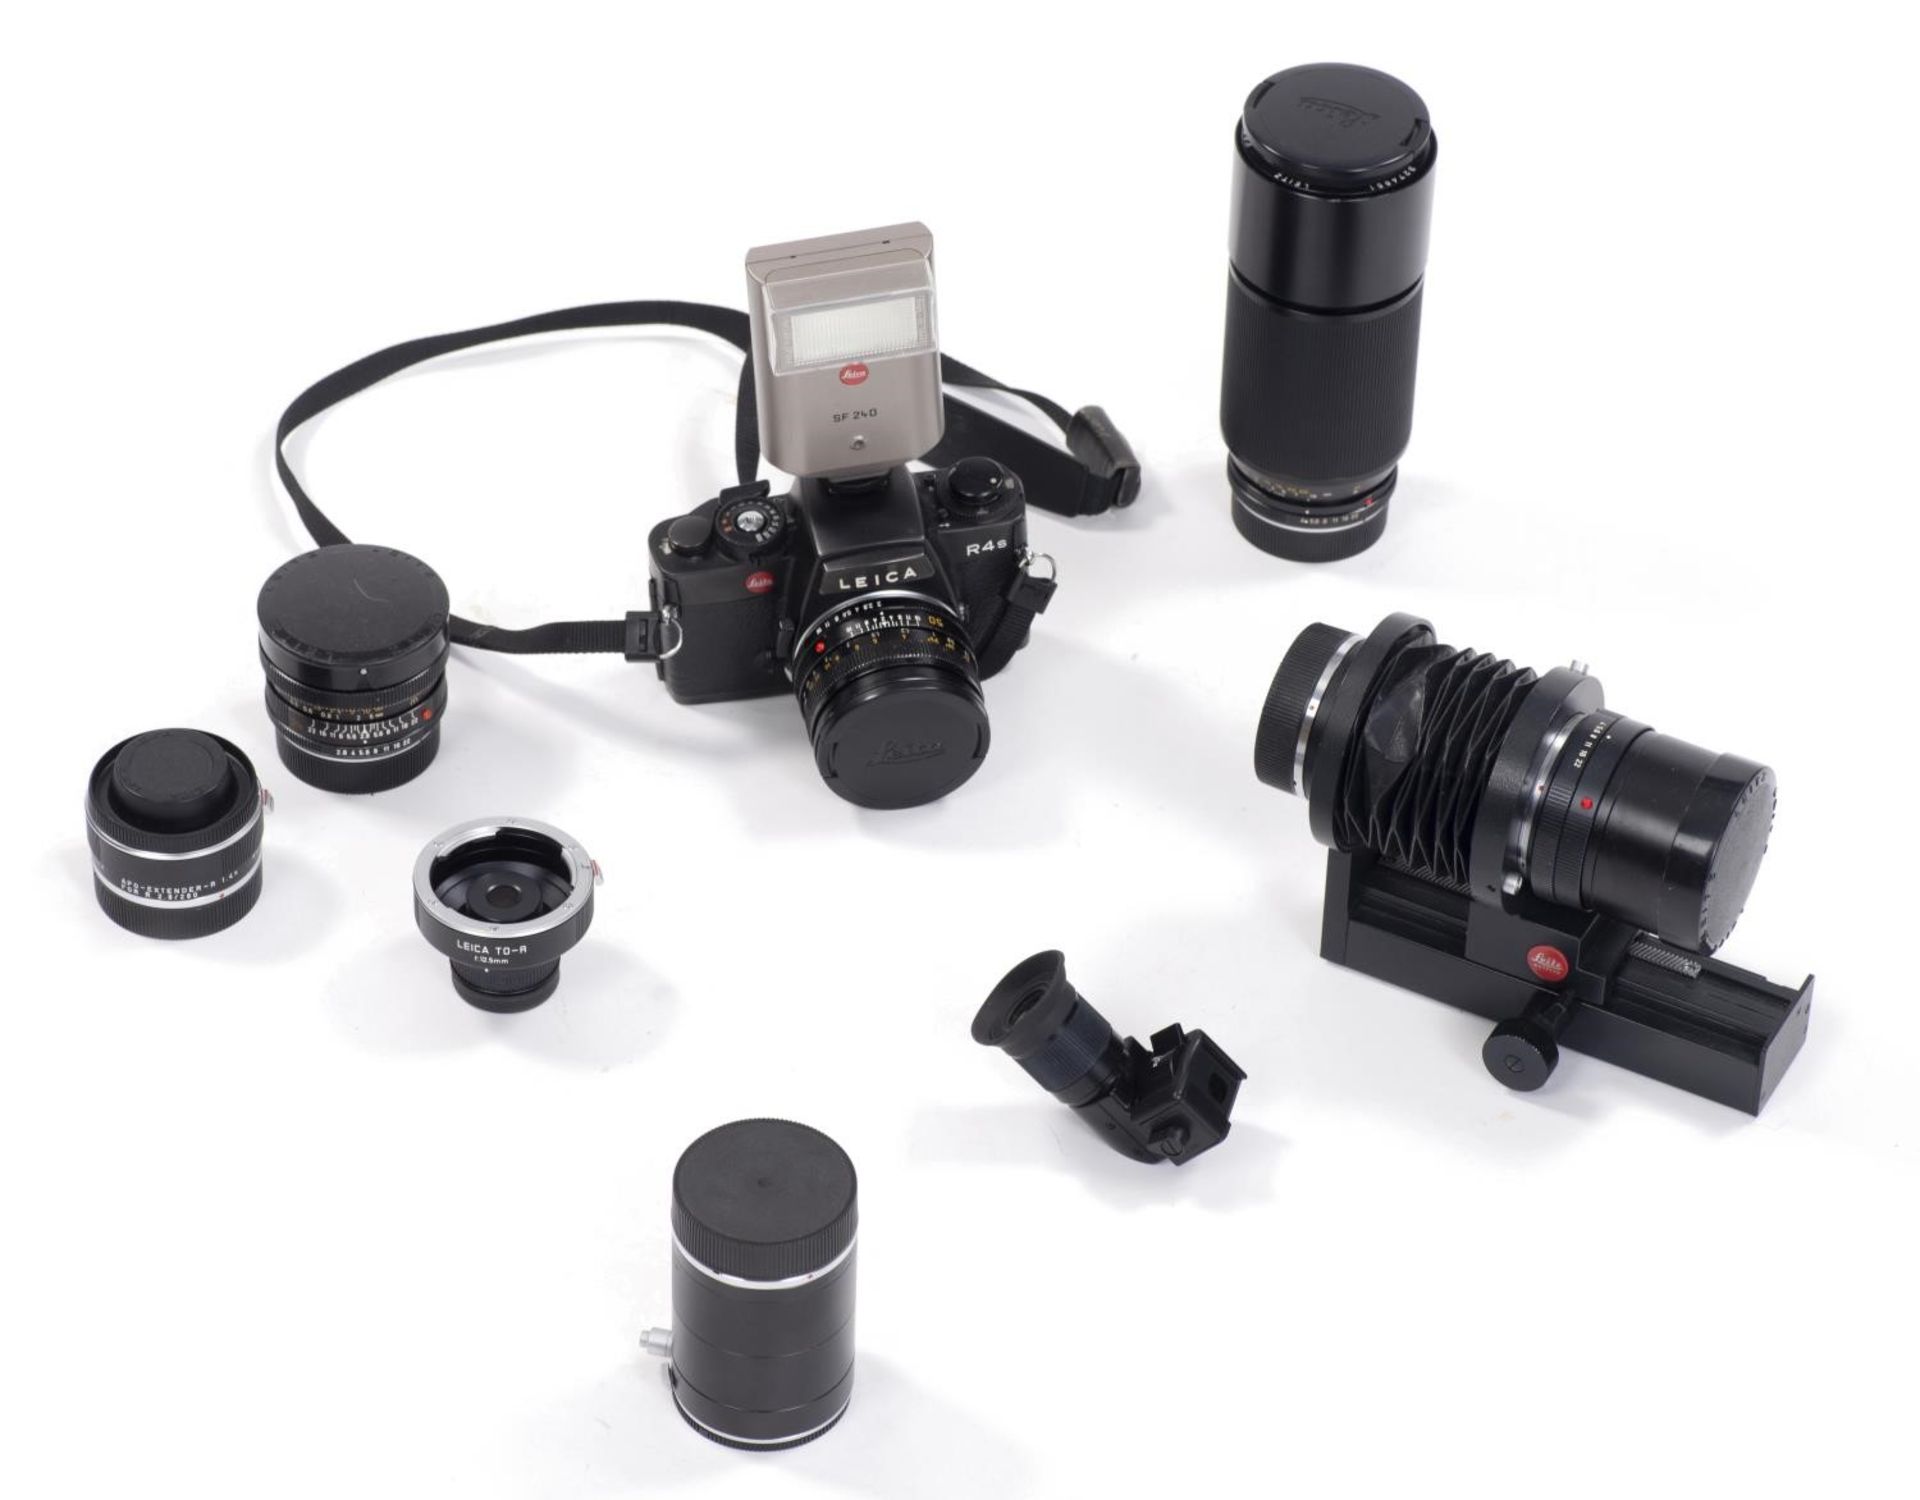 1 appareil Leica R4 avec 1 50mm, 70-210mm, 24mm, 1 bague de rallonge, 1 viseur pour [...]